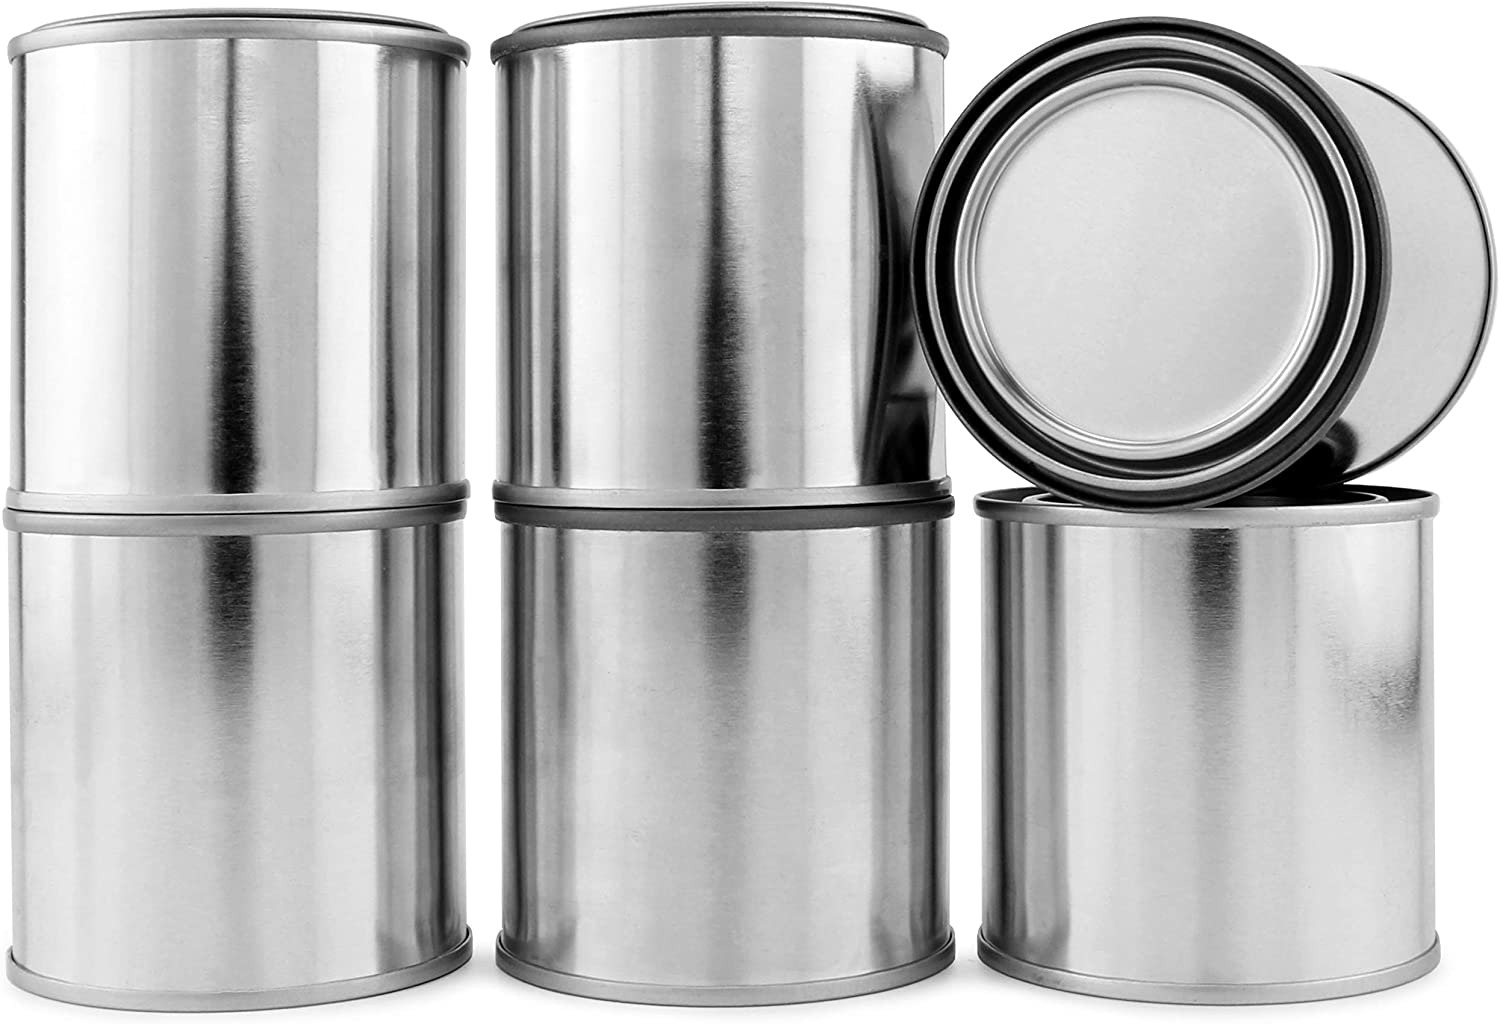 Cornucopia Metal Paint Cans With Lids (1/2 Pint Size, 6-pack)